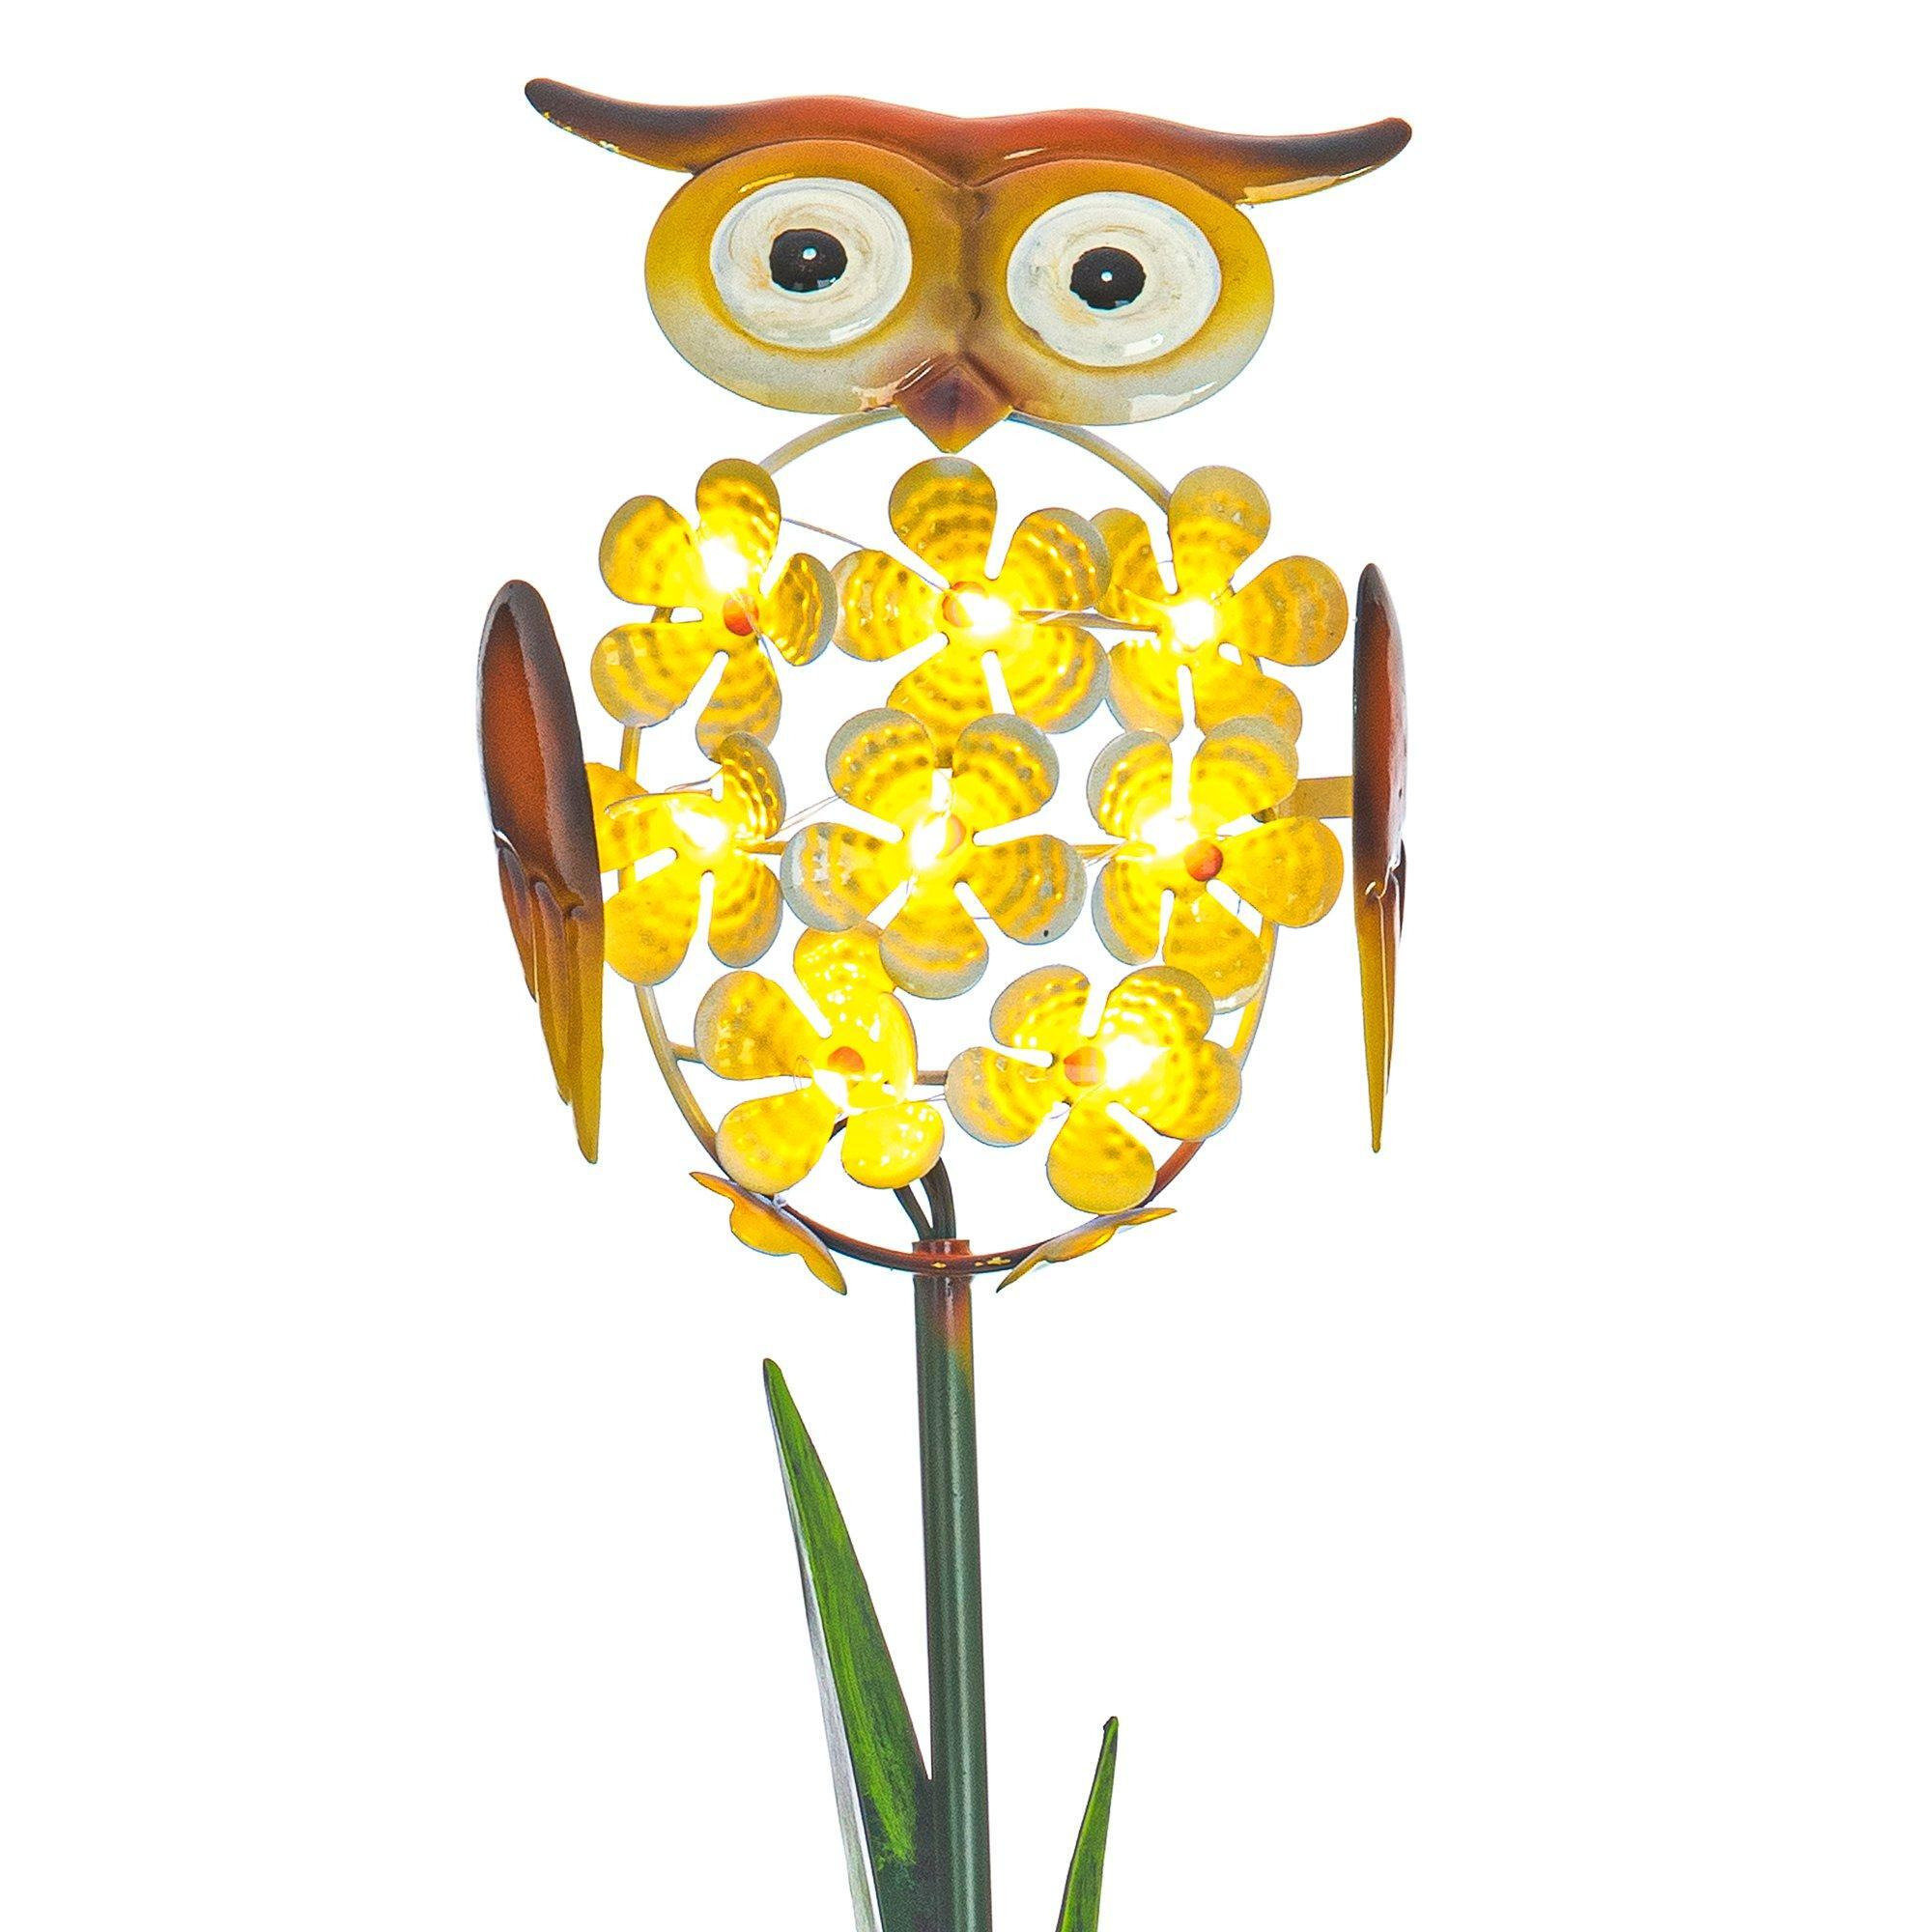 Owl-shaped LED Solar Garden Light - image 1